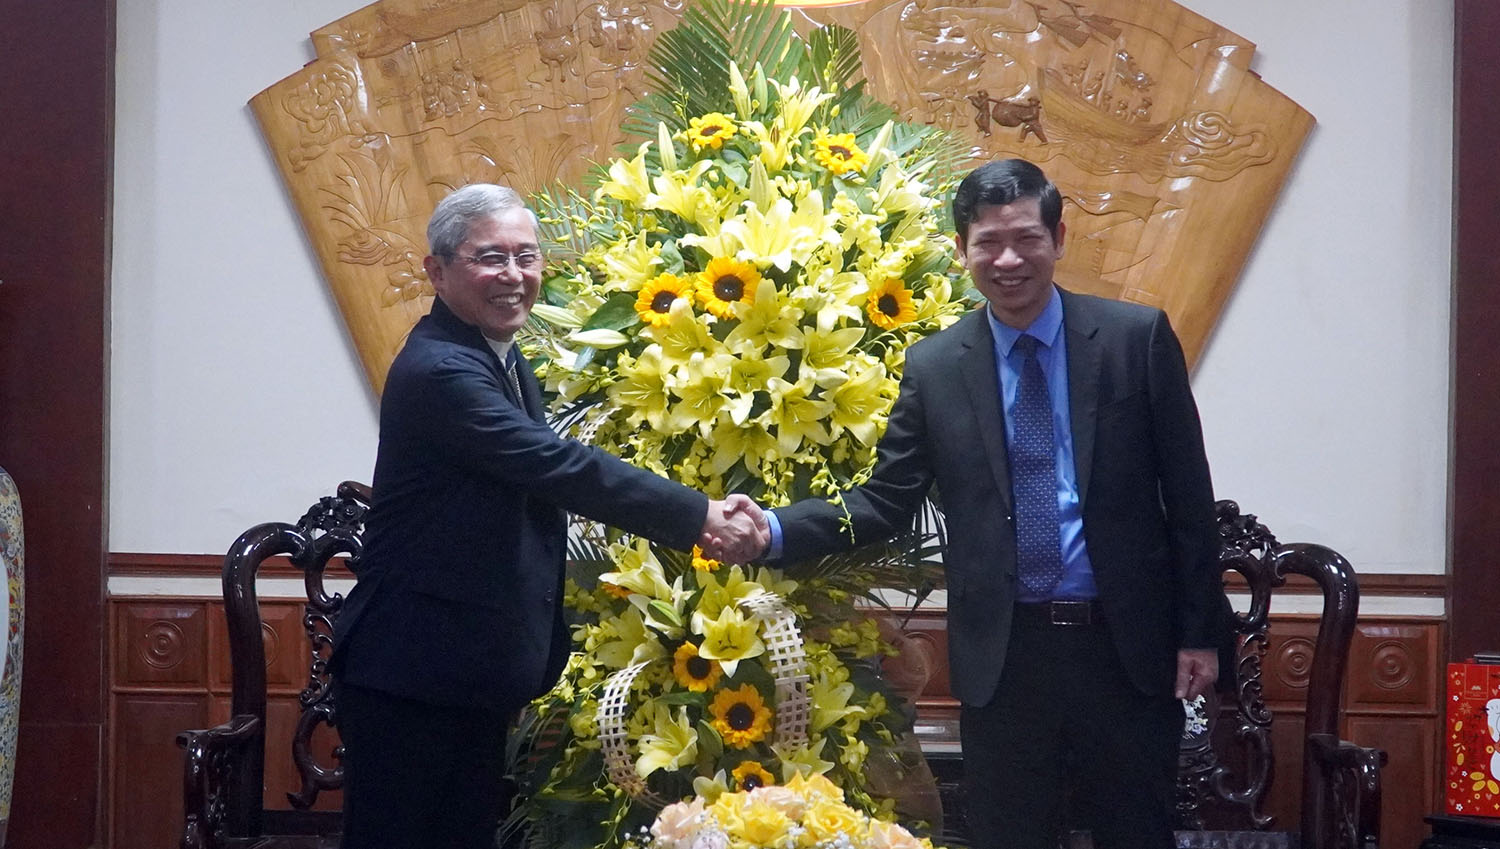 Giám mục Louis Nguyễn Anh Tuấn tặng hoa chúc lãnh đạo Đảng, chính quyền và nhân dân Quảng Bình năm mới hạnh phúc, thành công